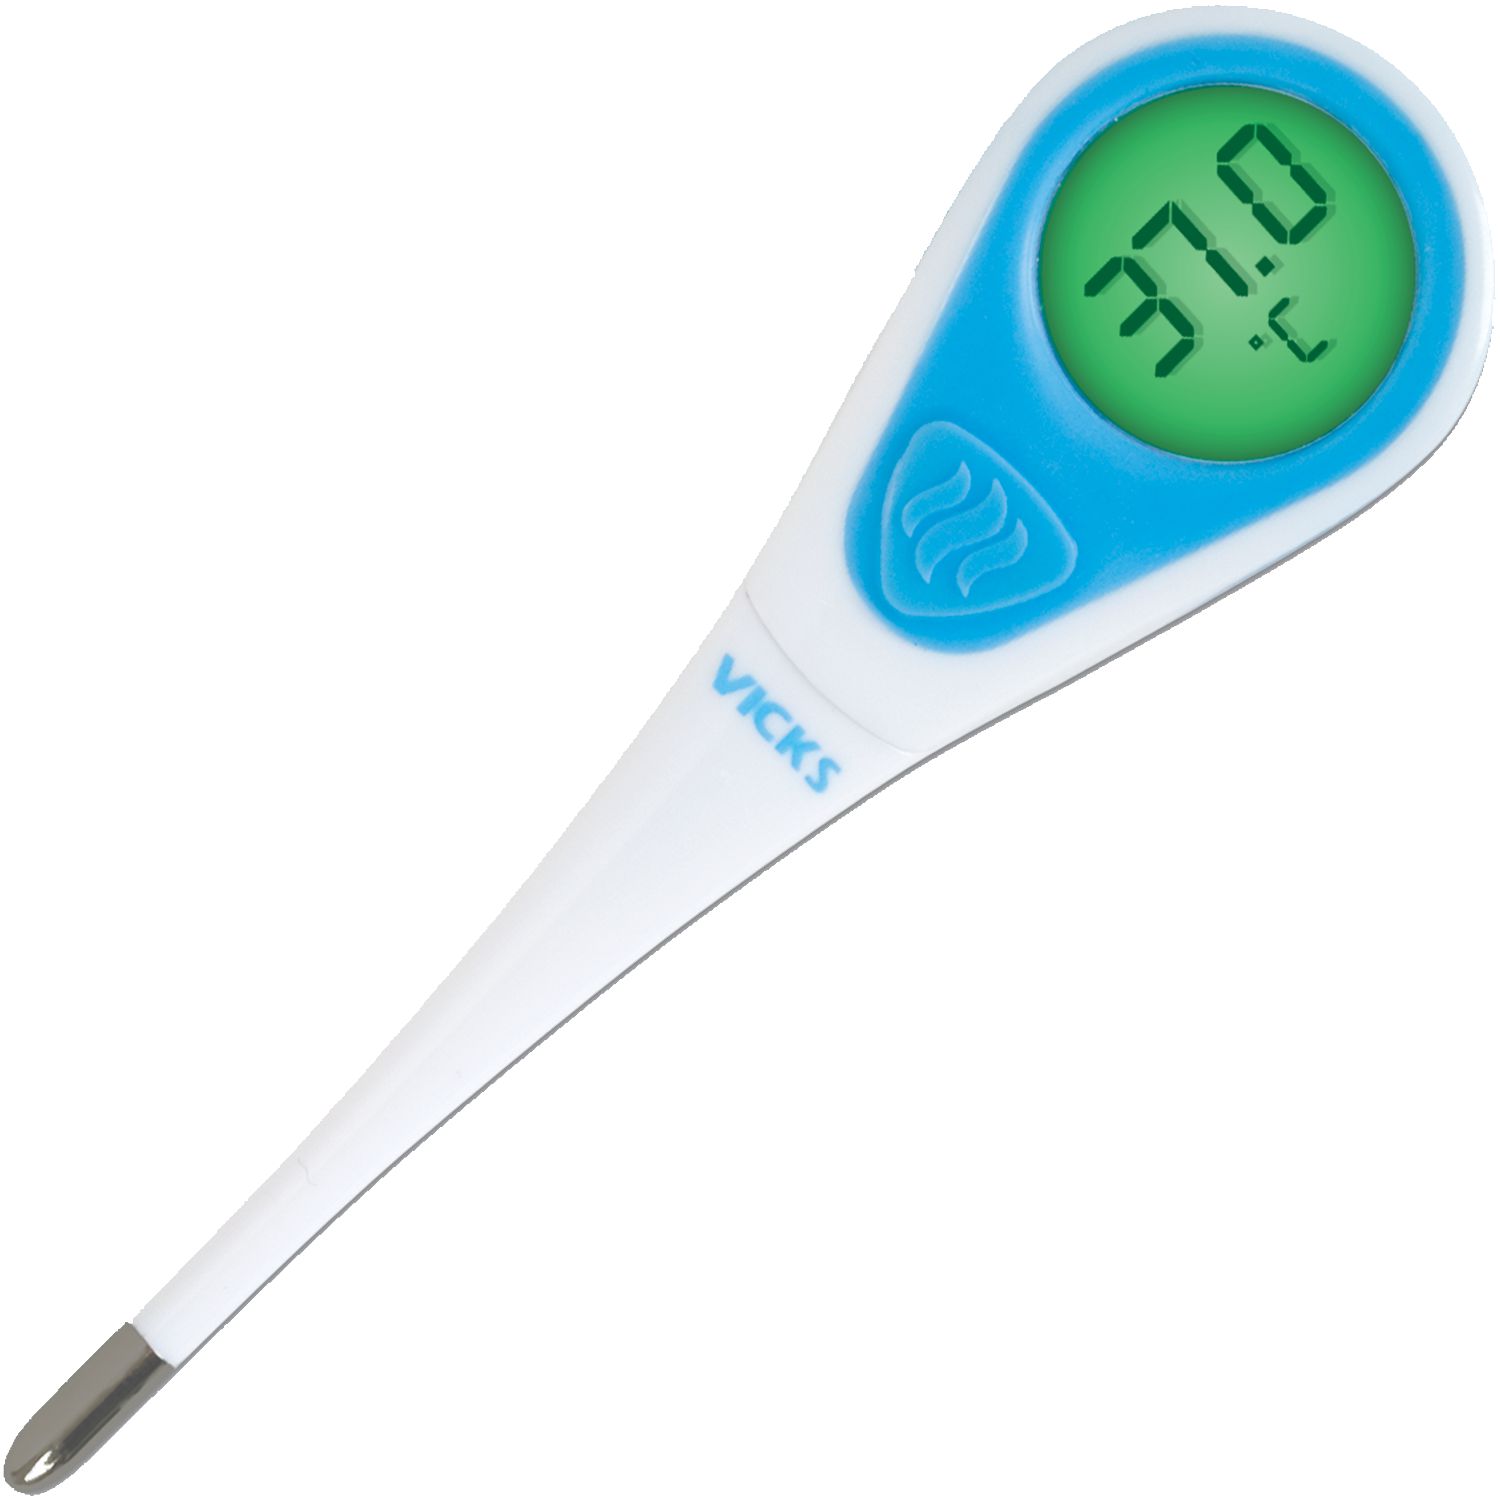 Thermomètre numérique grand affichage – Vicks : Thermomètre